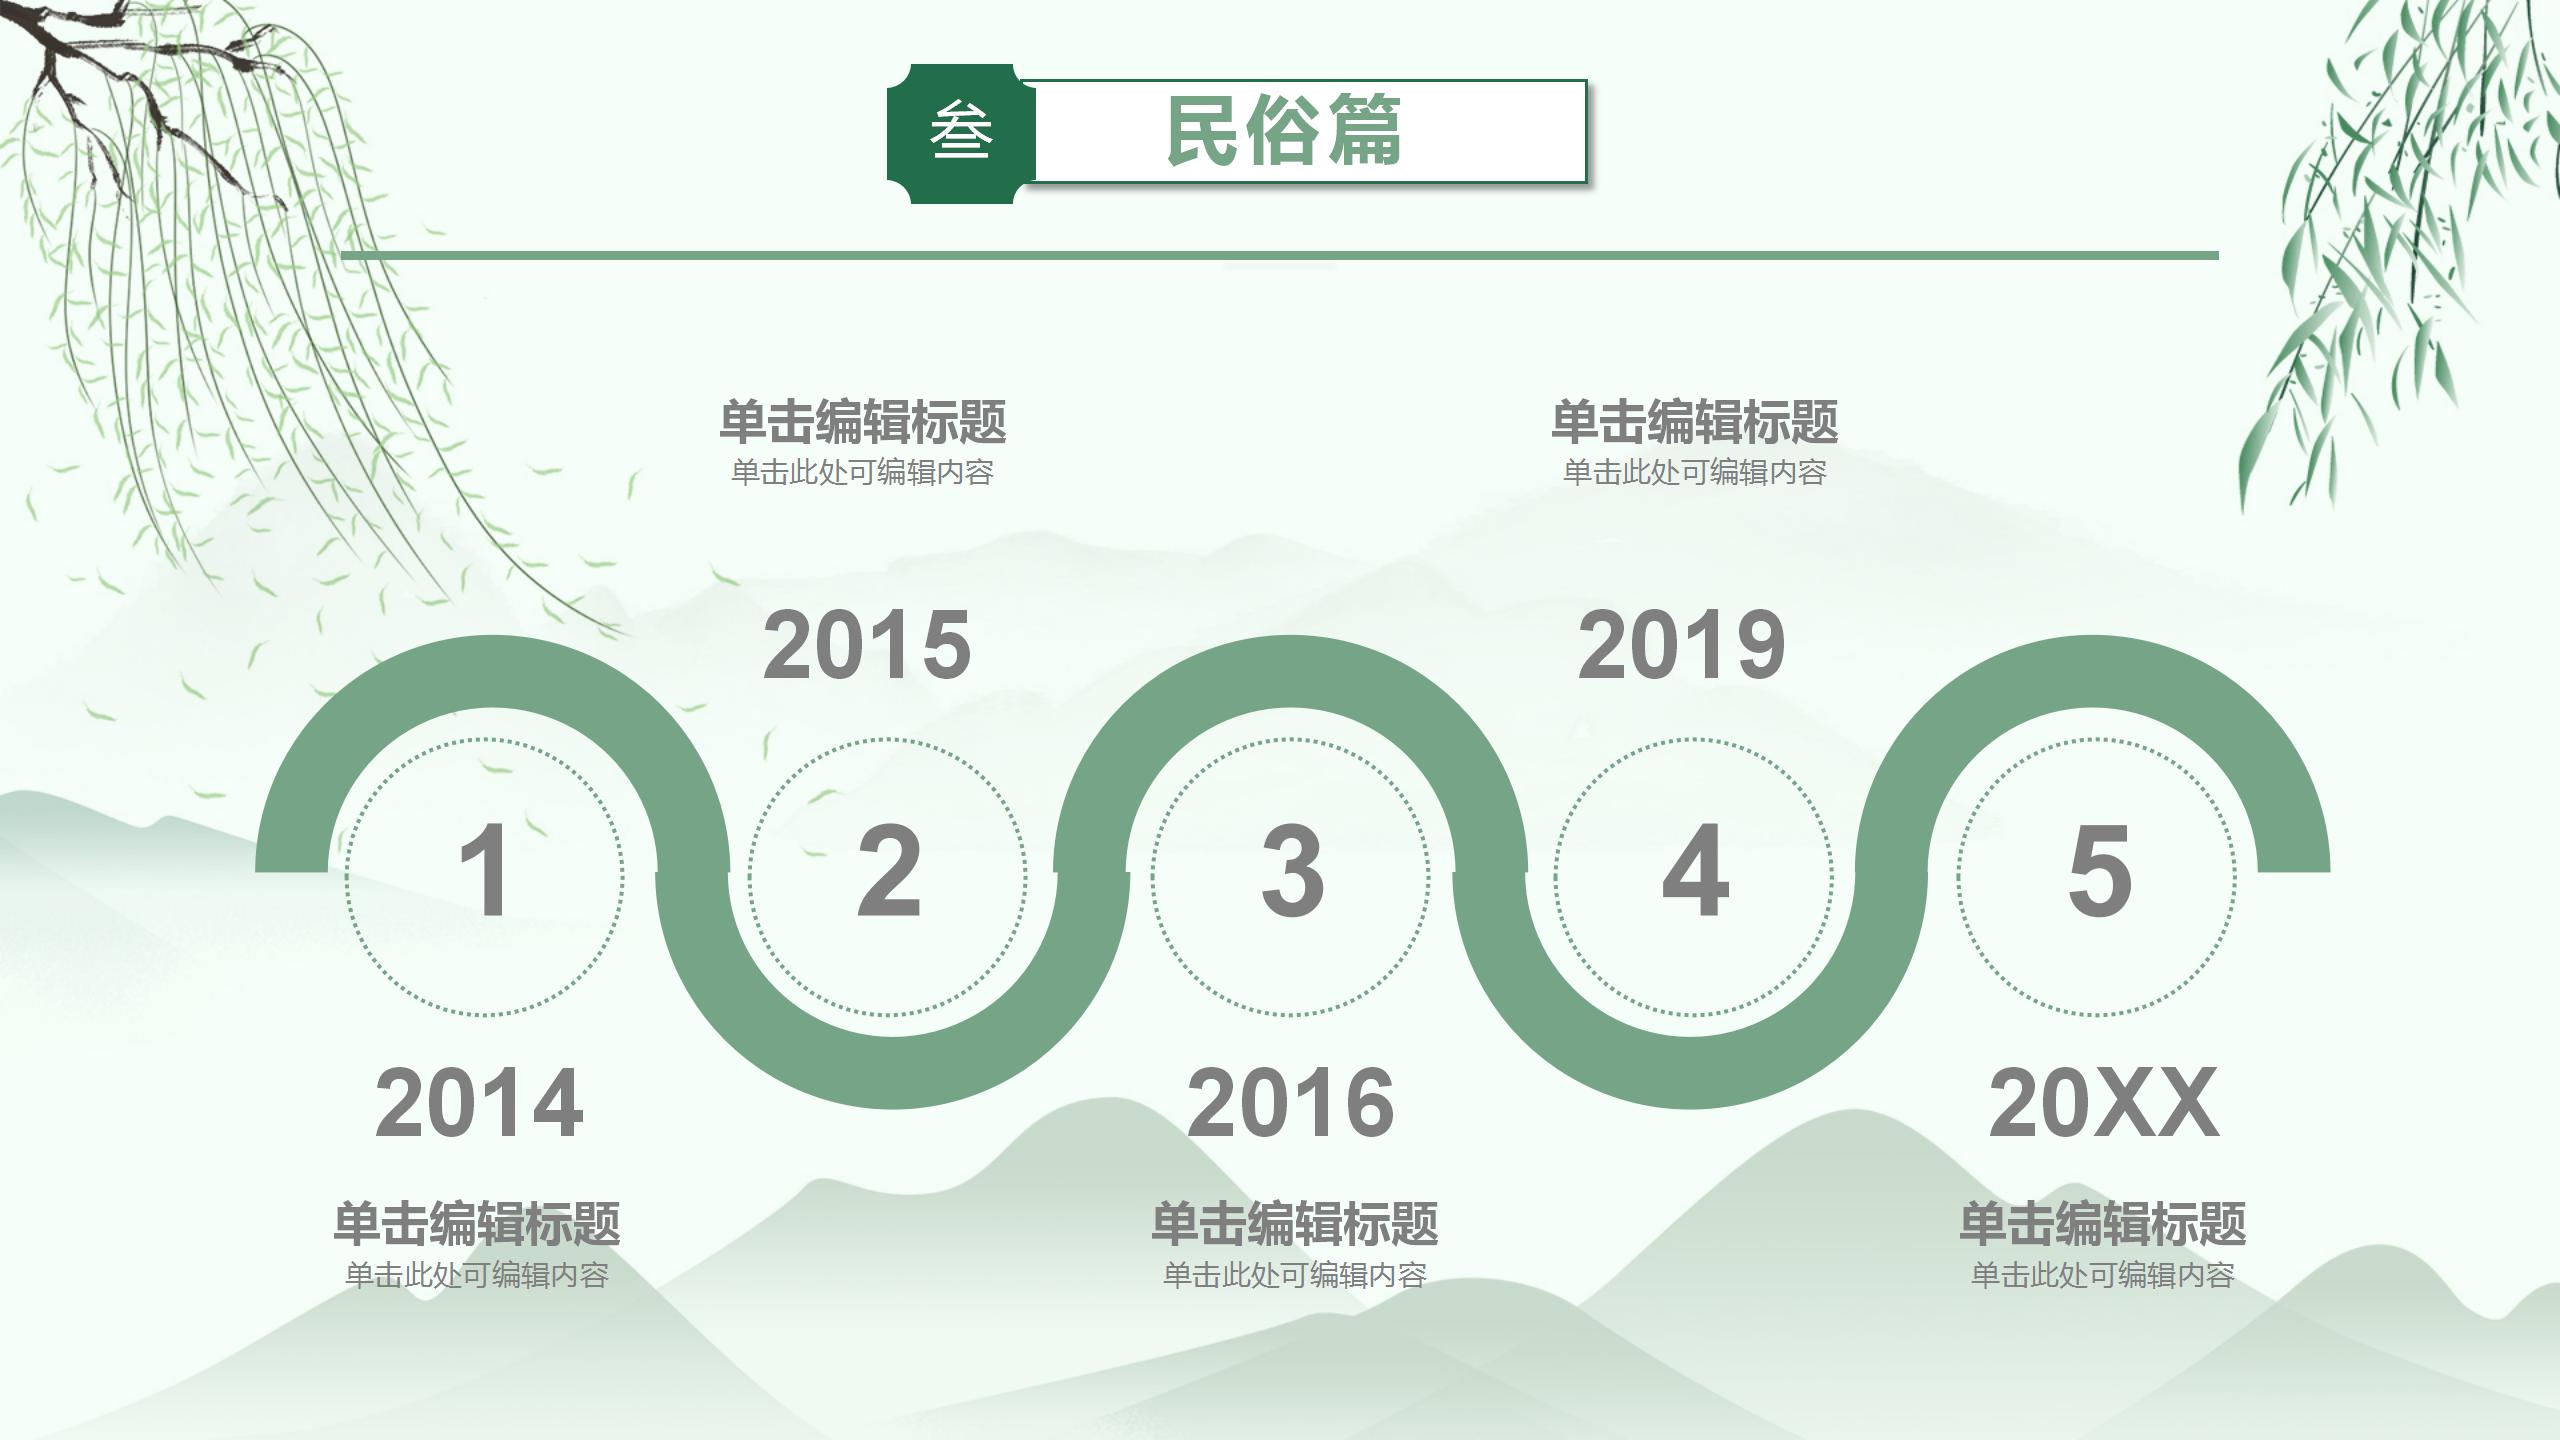 清新中国风卡通端午节主题班会活动策划节日介绍PPT模板